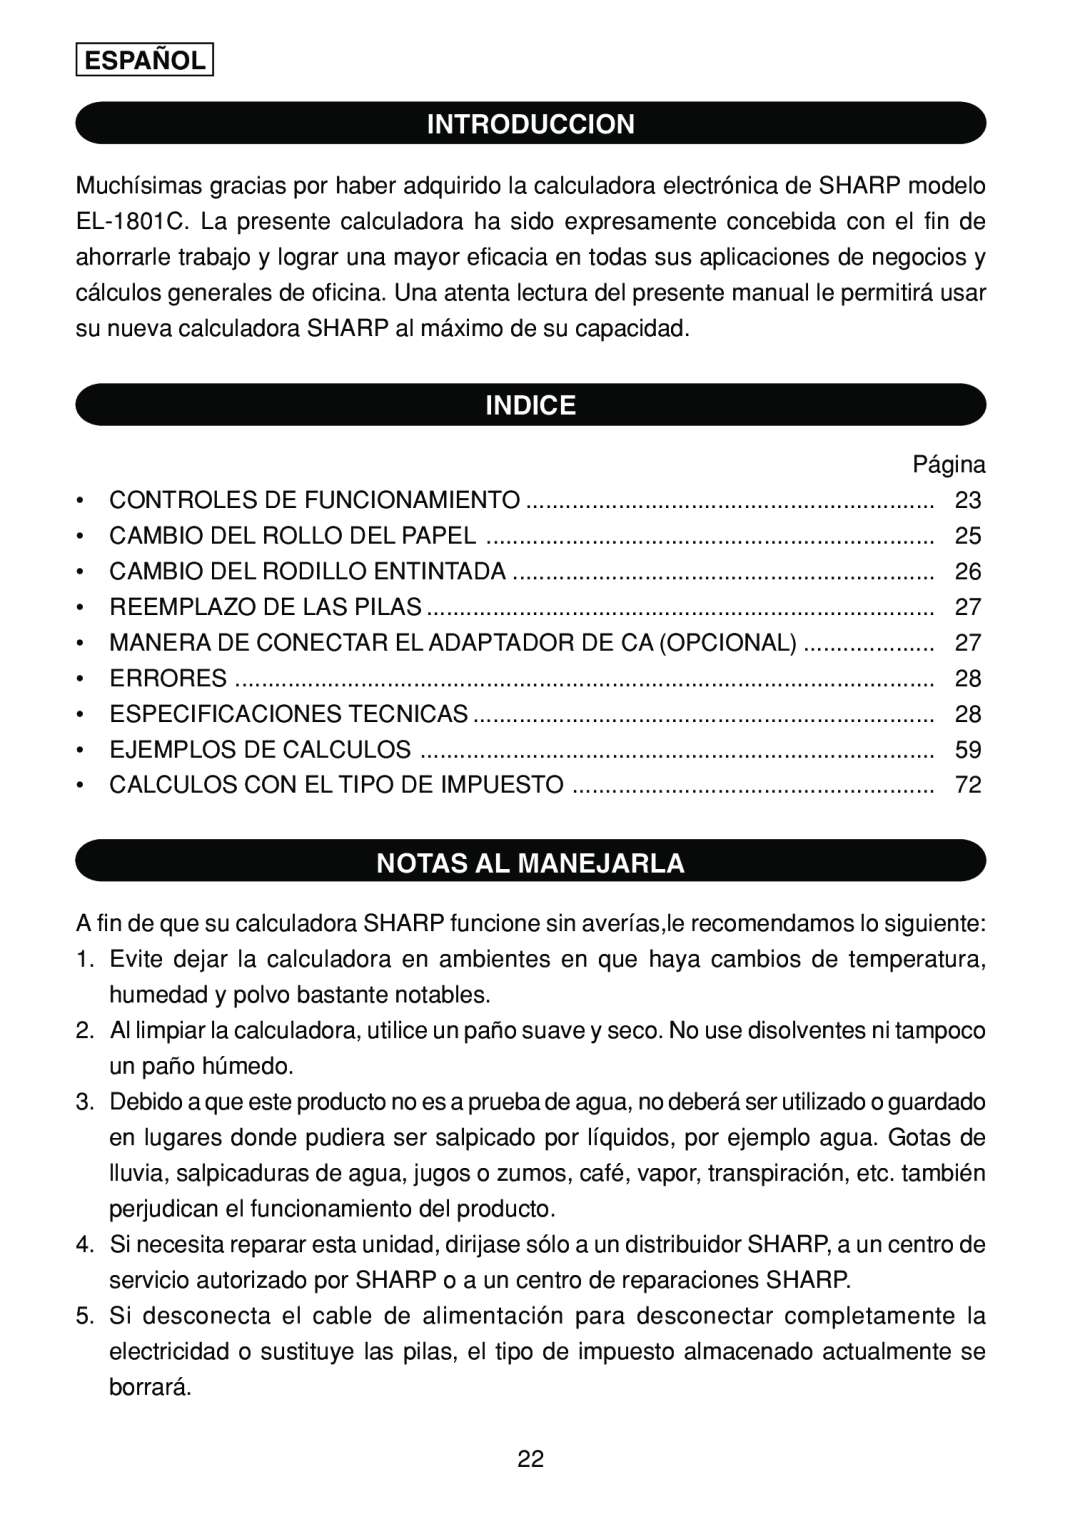 Sharp EL-1801C operation manual Introduccion, Indice, Notas Al Manejarla, Español 